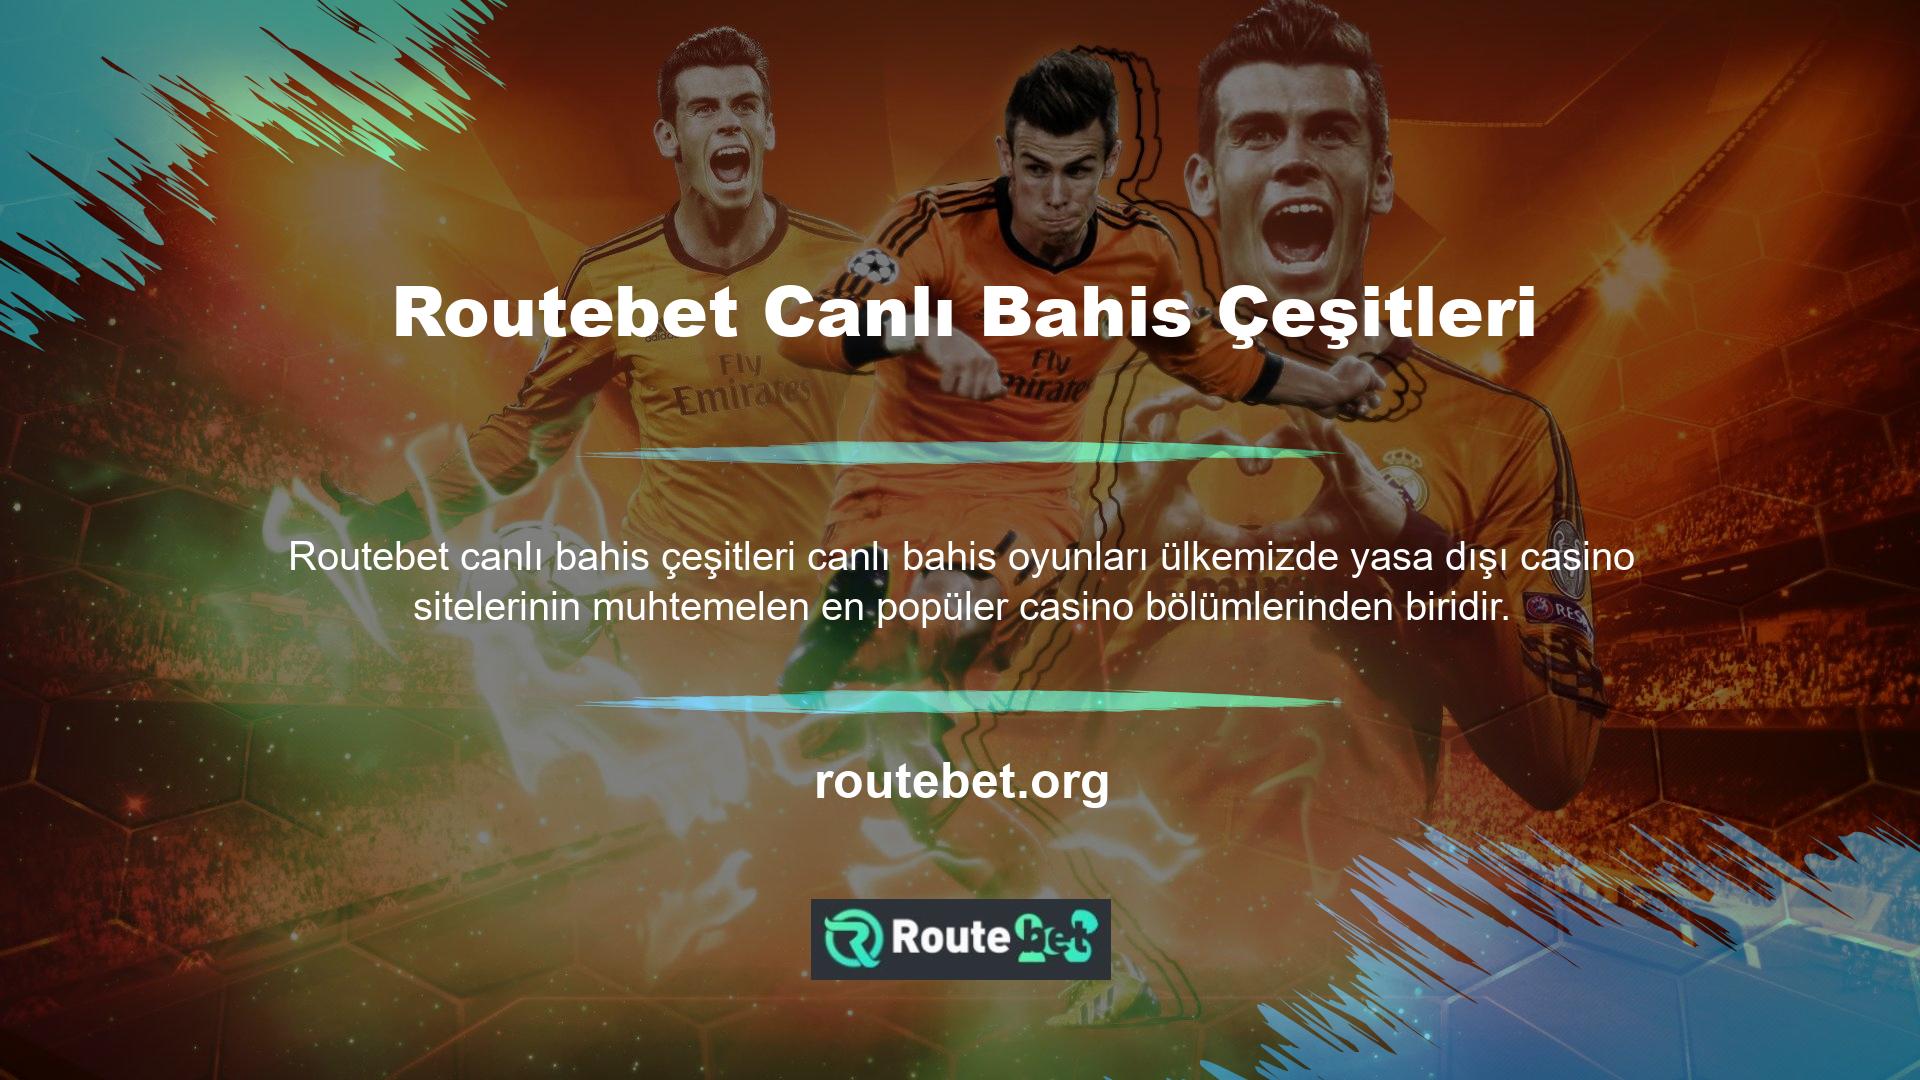 Routebet Bahis, canlı bahis bölümü aracılığıyla üyelerine kaliteli bahis hizmeti sunmayı amaçlayan sitelerden biridir